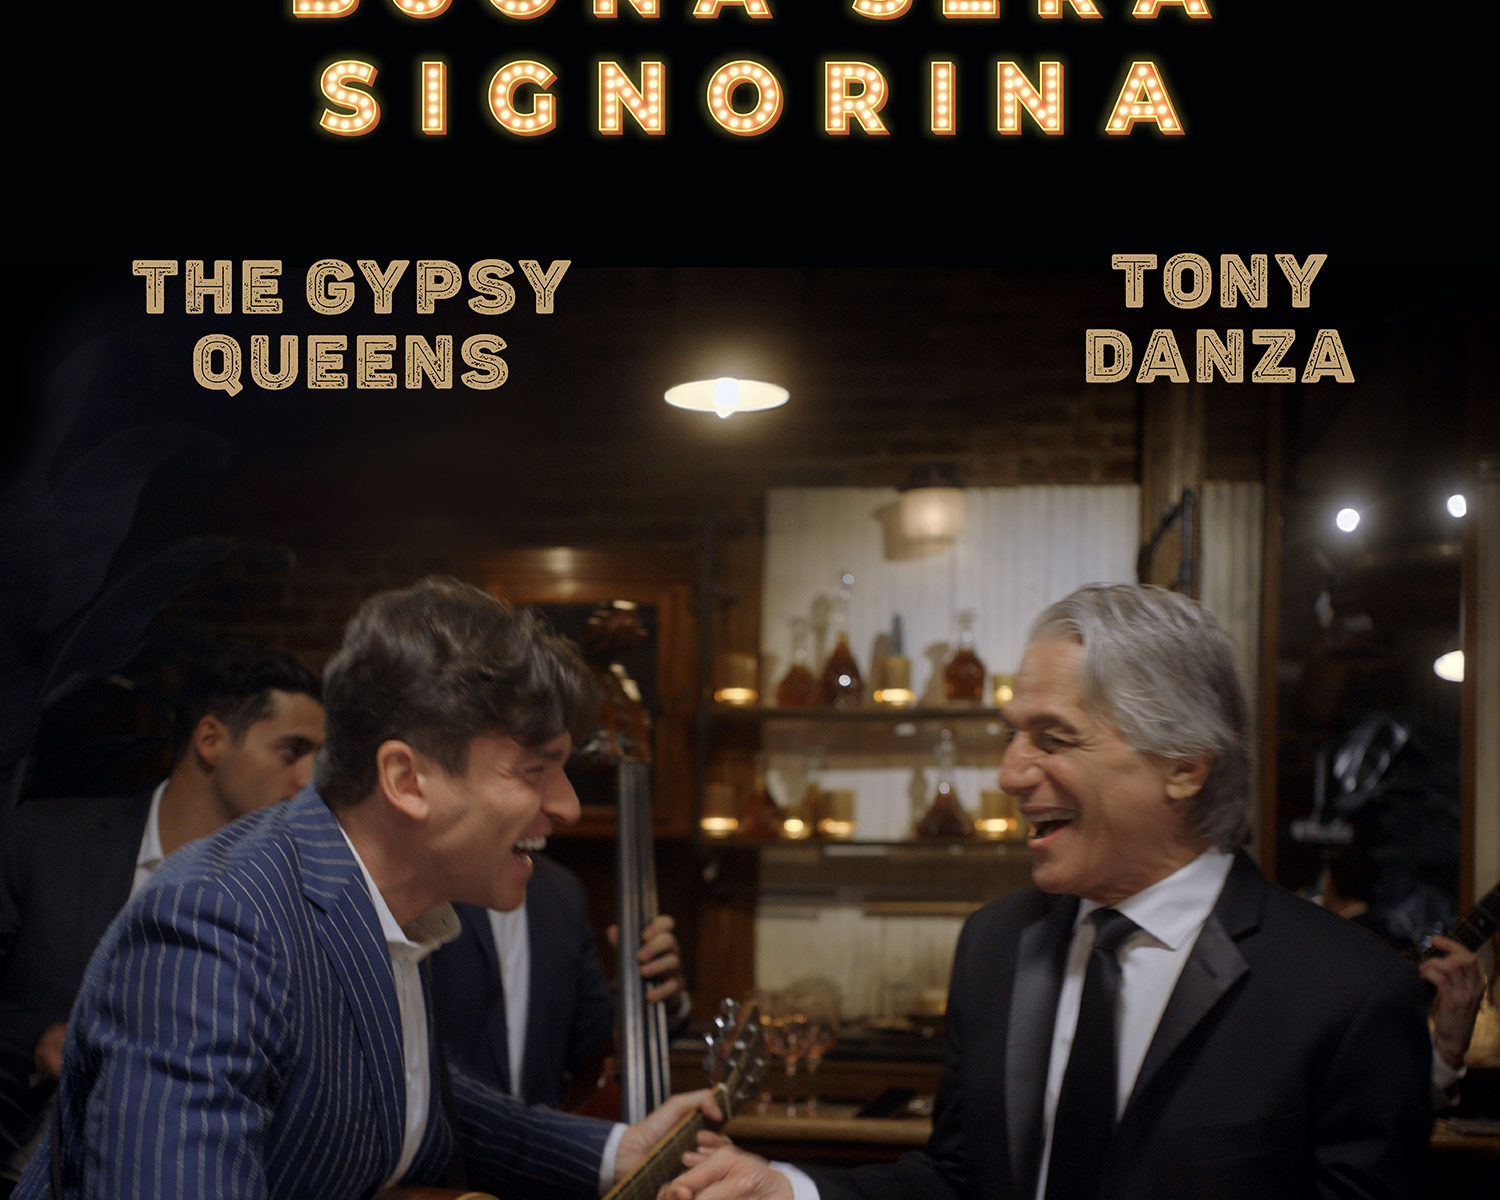 The Gypsy Queens & Tony Danza